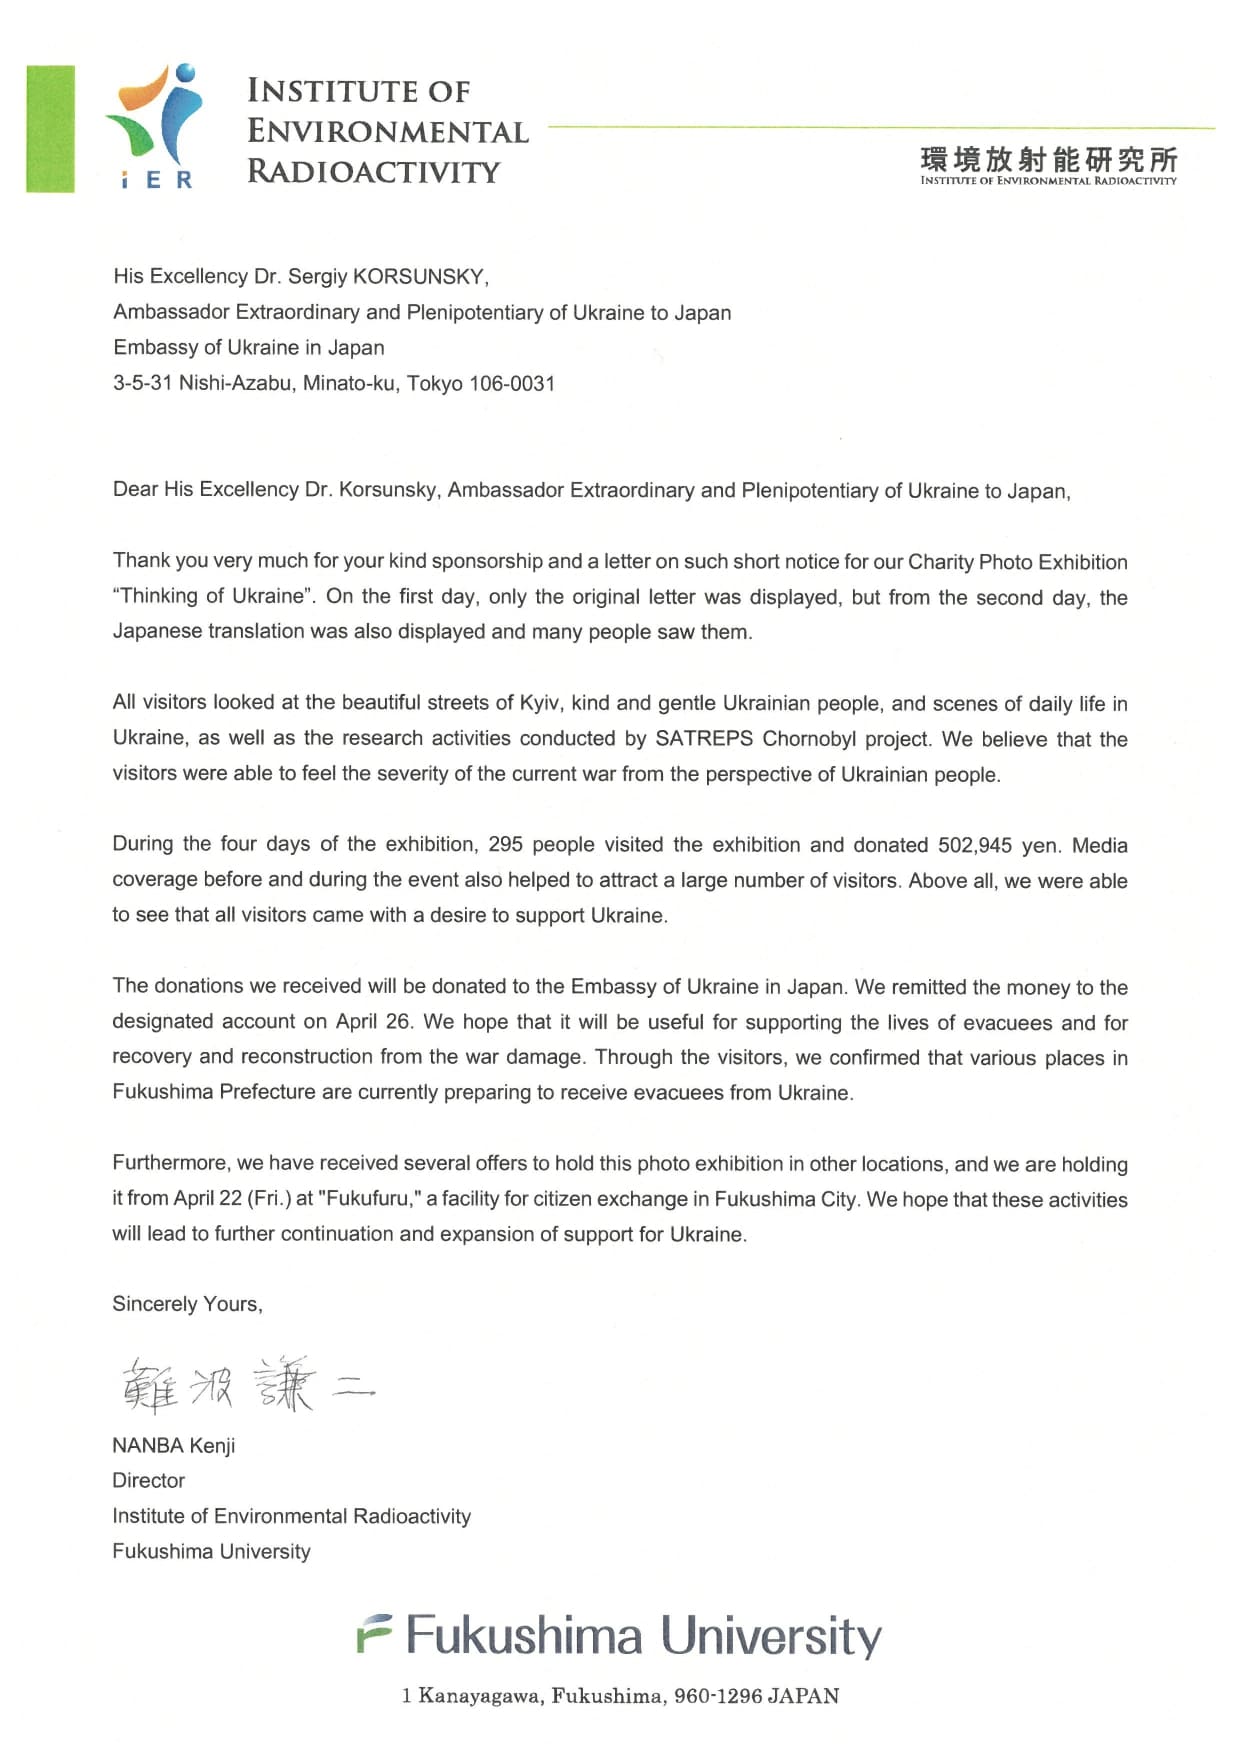 Letter of thanks from Director Nanba to Ambassador KORSUNSKY